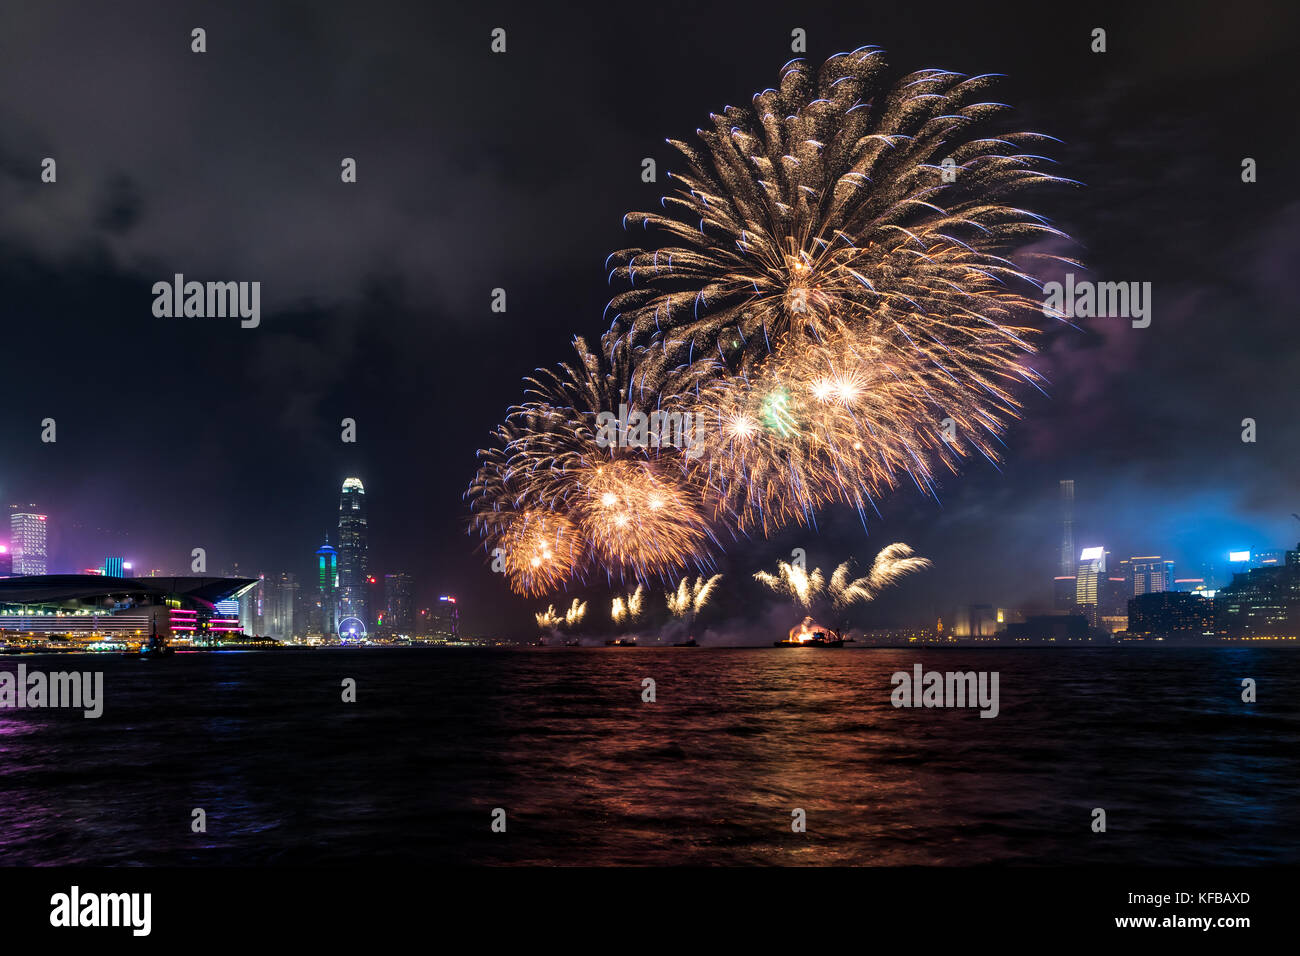 Fireworks display at Victoria harbor of Hong Kong Stock Photo